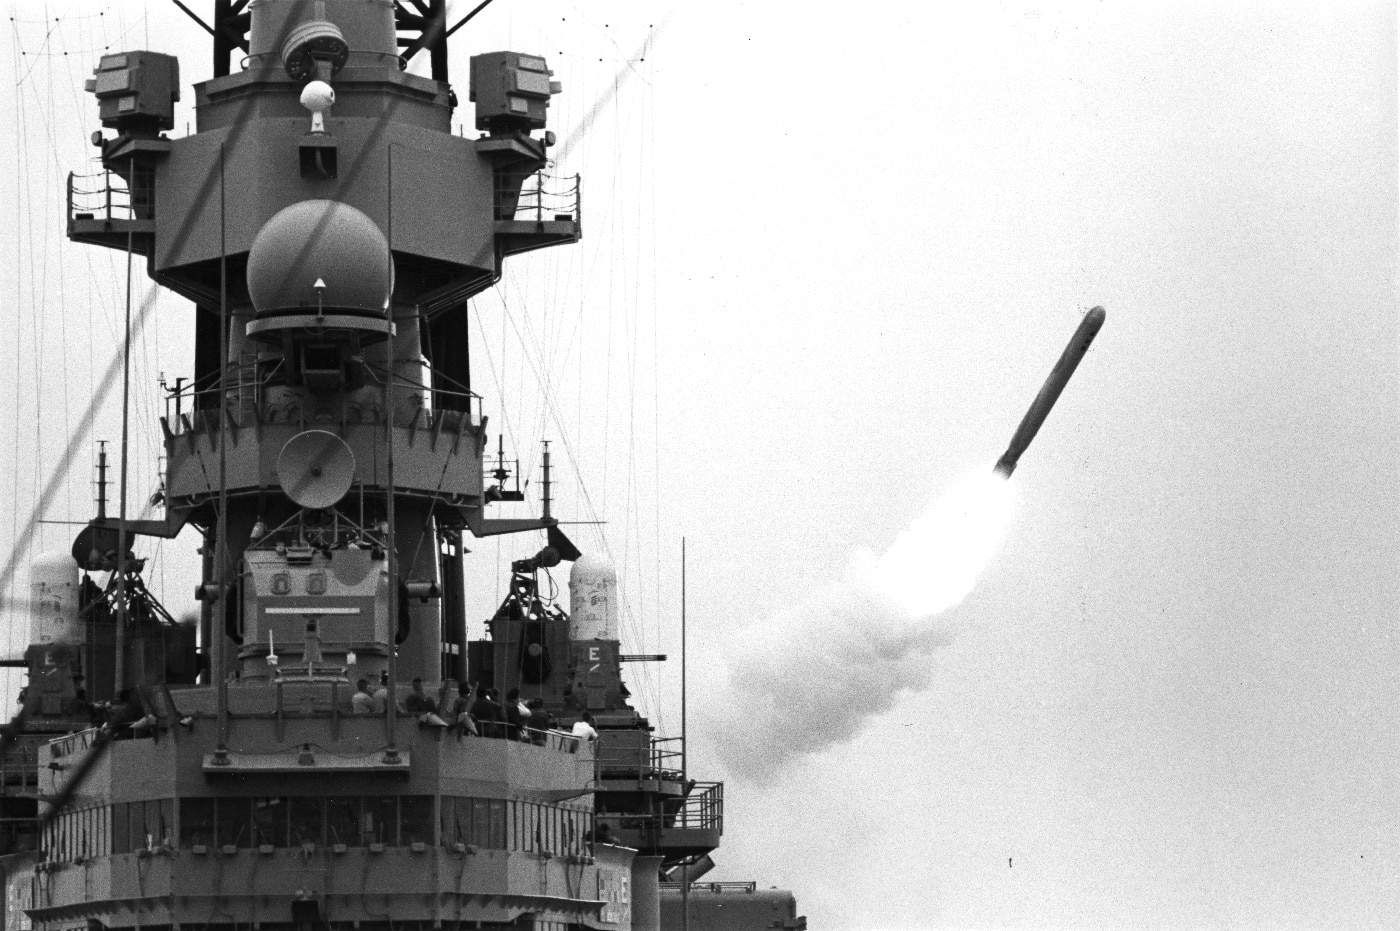 USS Missouri fires Tomahawk missile during Operation Desert Storm Gulf War